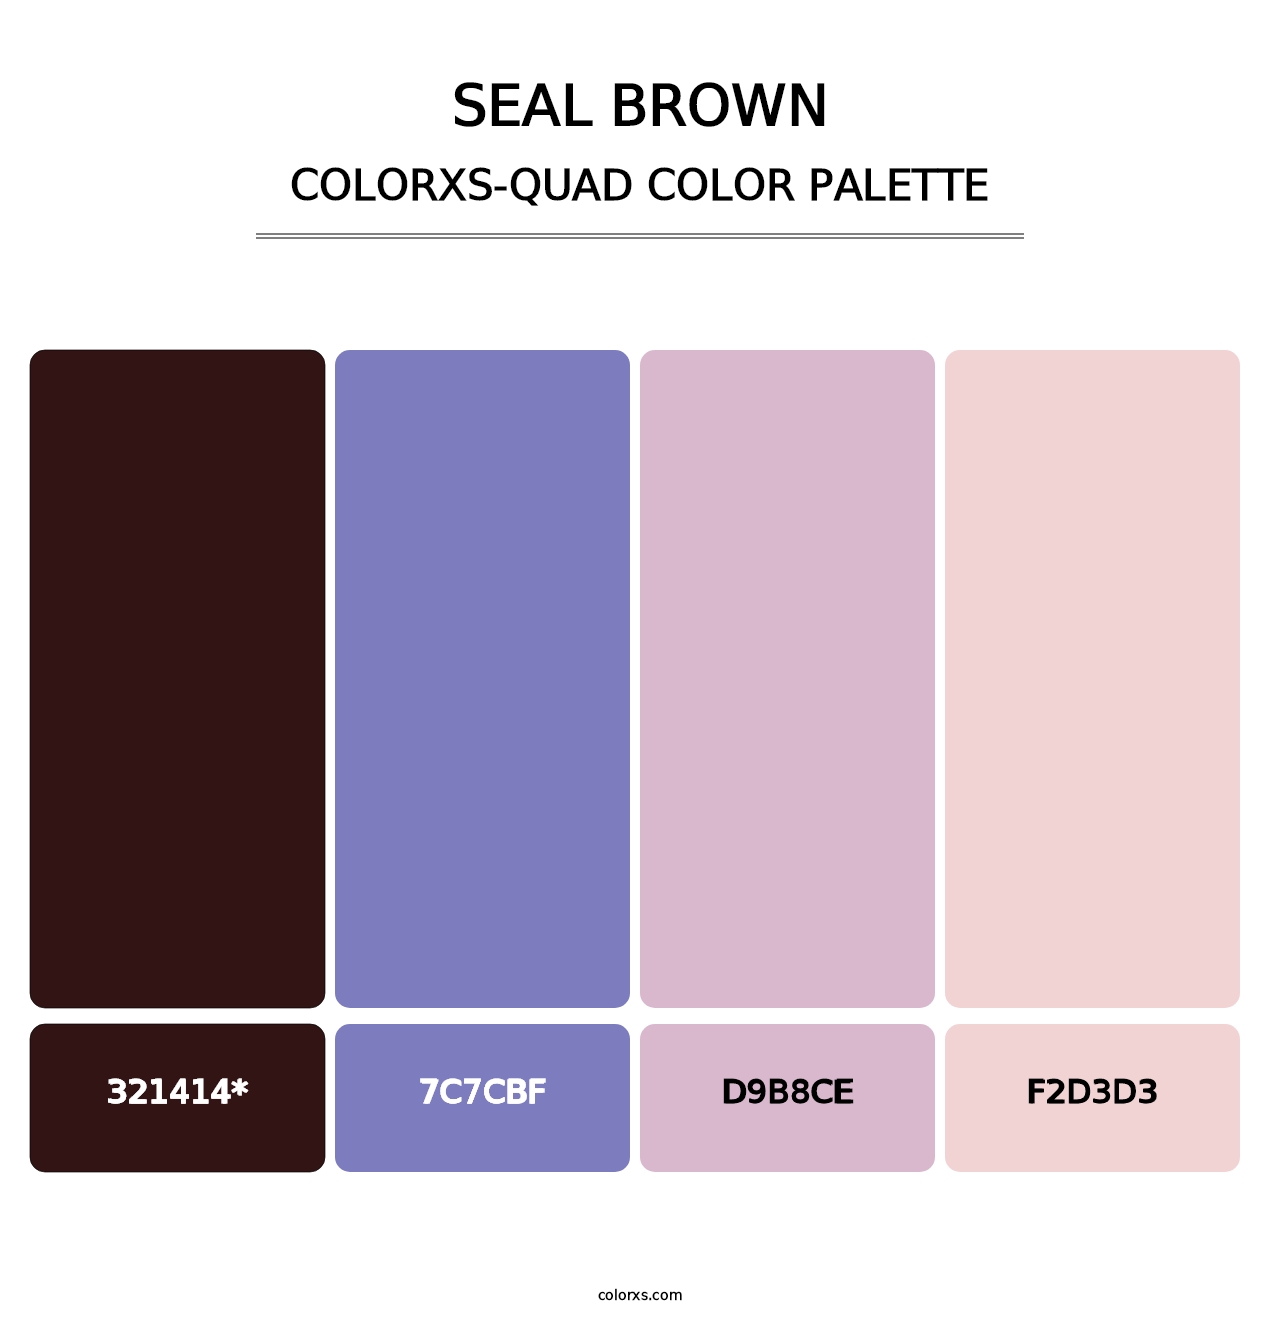 Seal brown - Colorxs Quad Palette